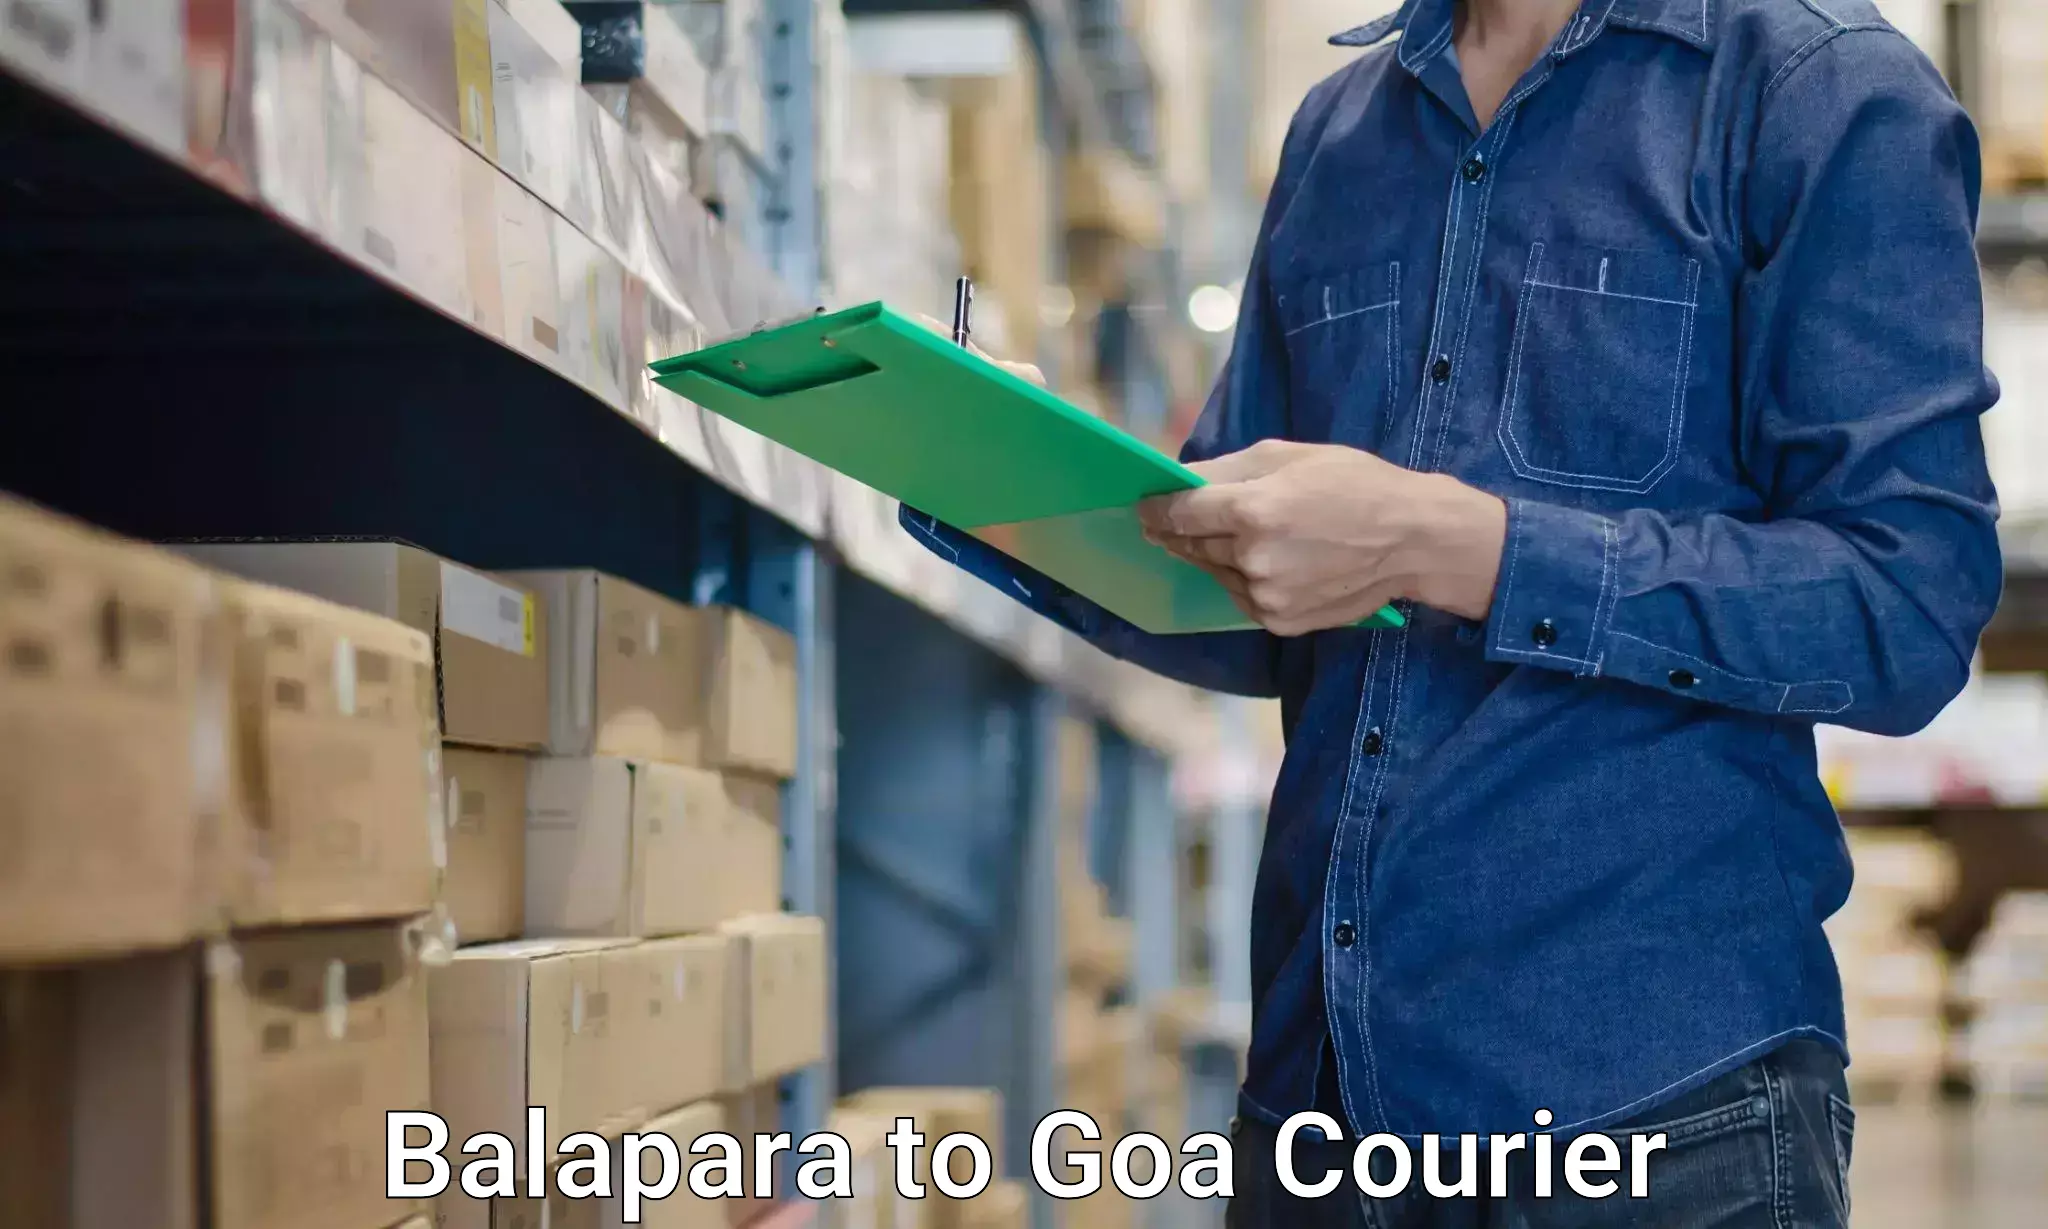 Moving service excellence Balapara to Goa